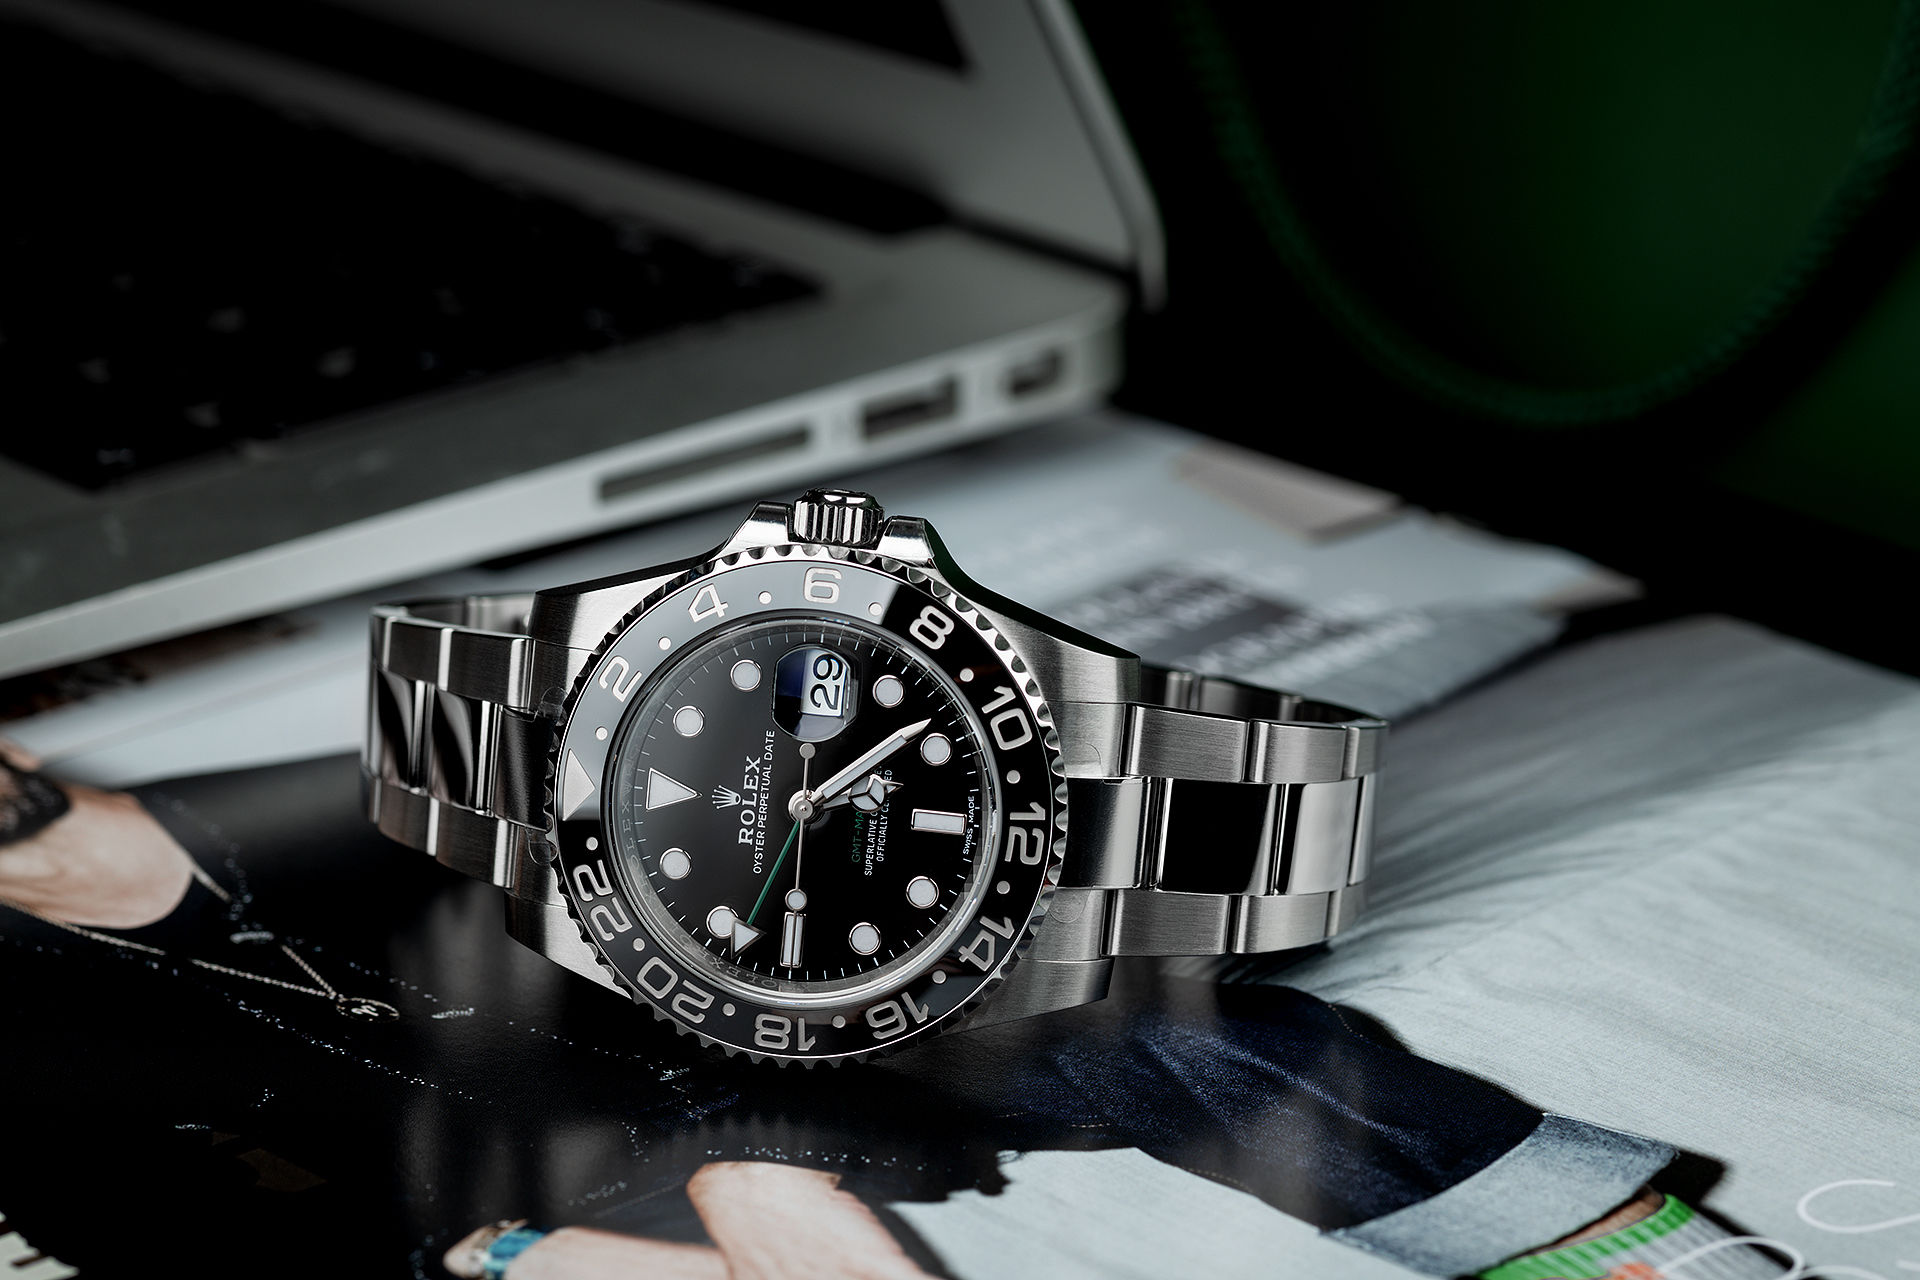 ref 116710LN | 'Brand New' | Rolex GMT-Master II